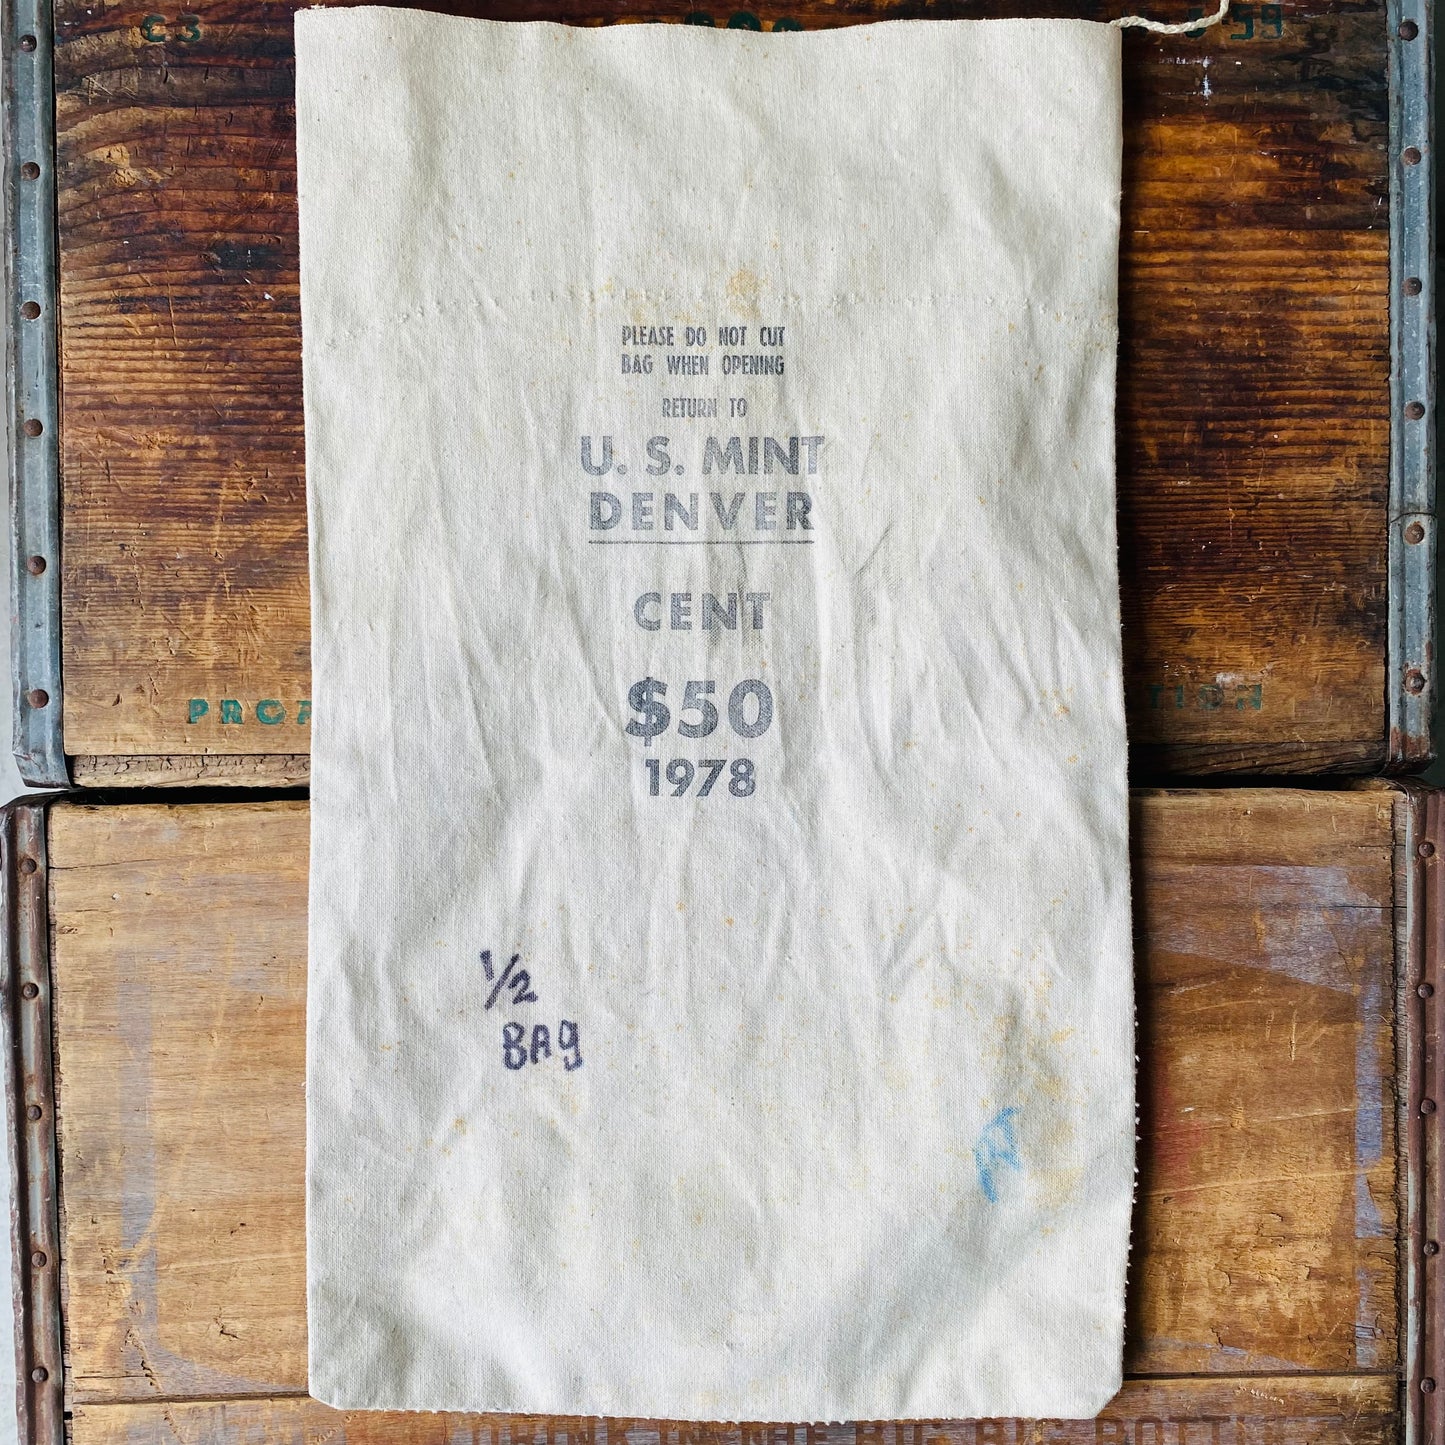 【1978 USA vintage】bank bag